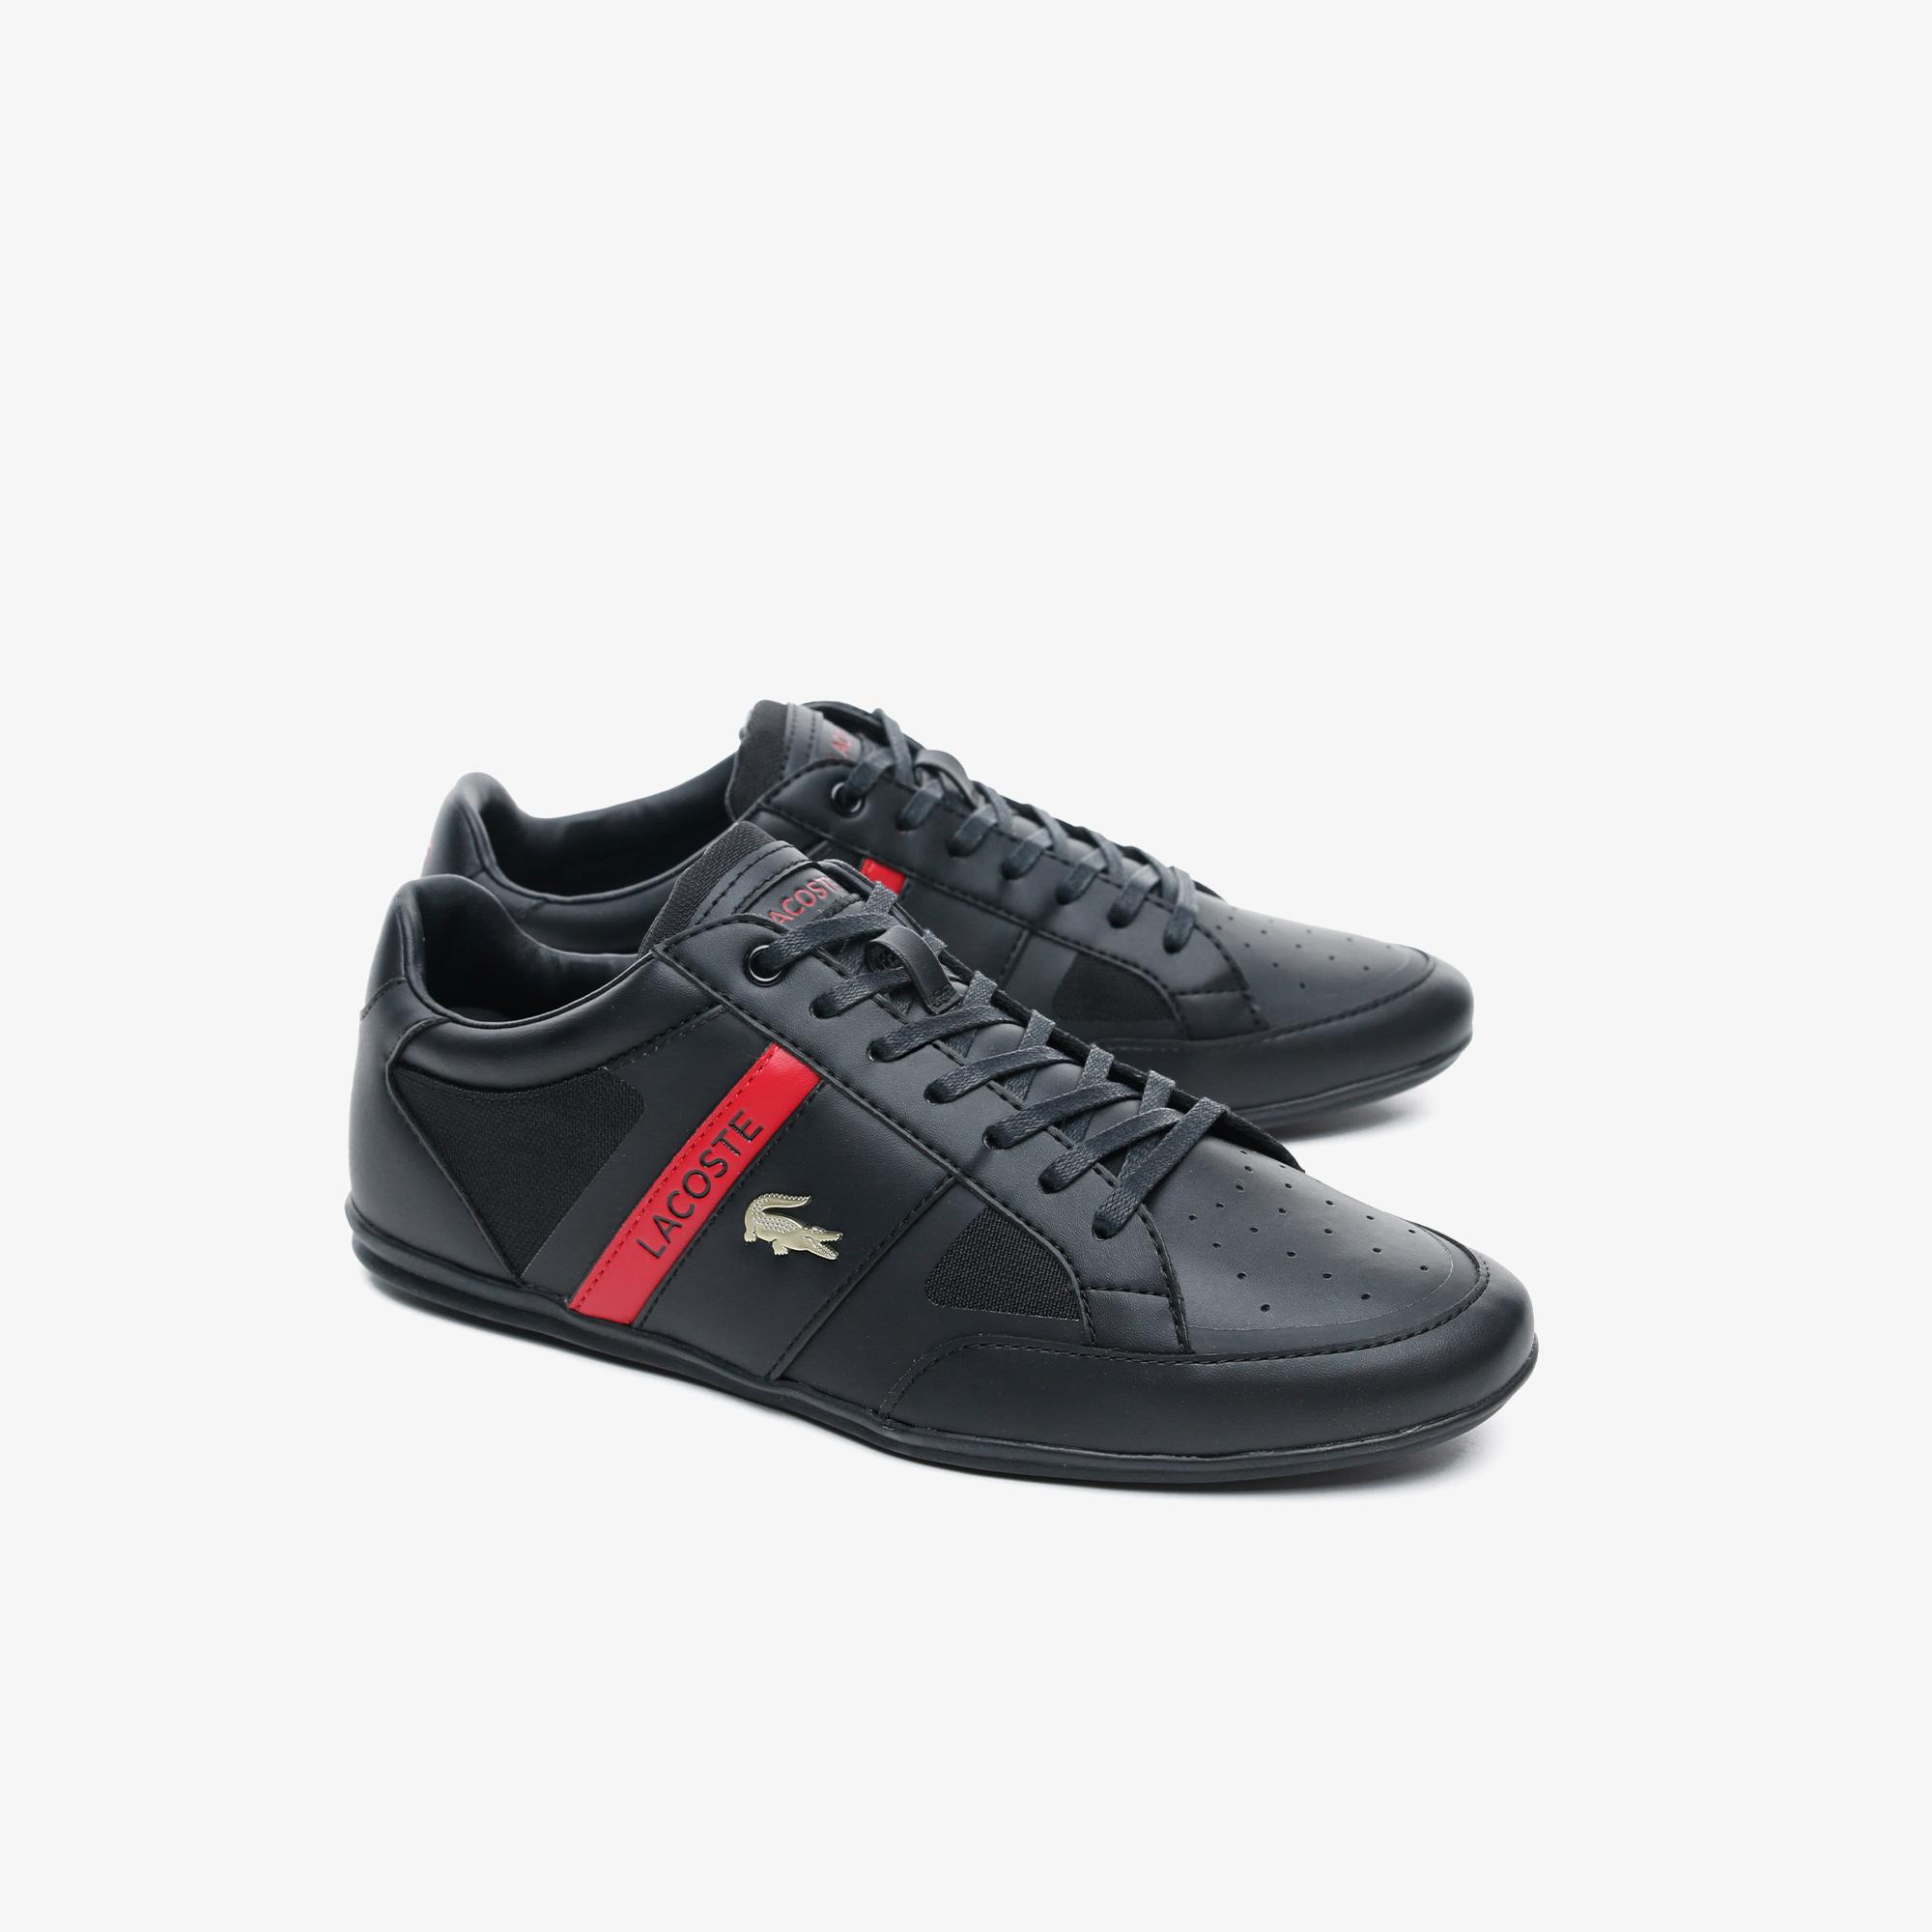 Lacoste Chaymon Tech 0120 3 Cma Erkek Siyah - Kırmızı Casual Ayakkabı. 3